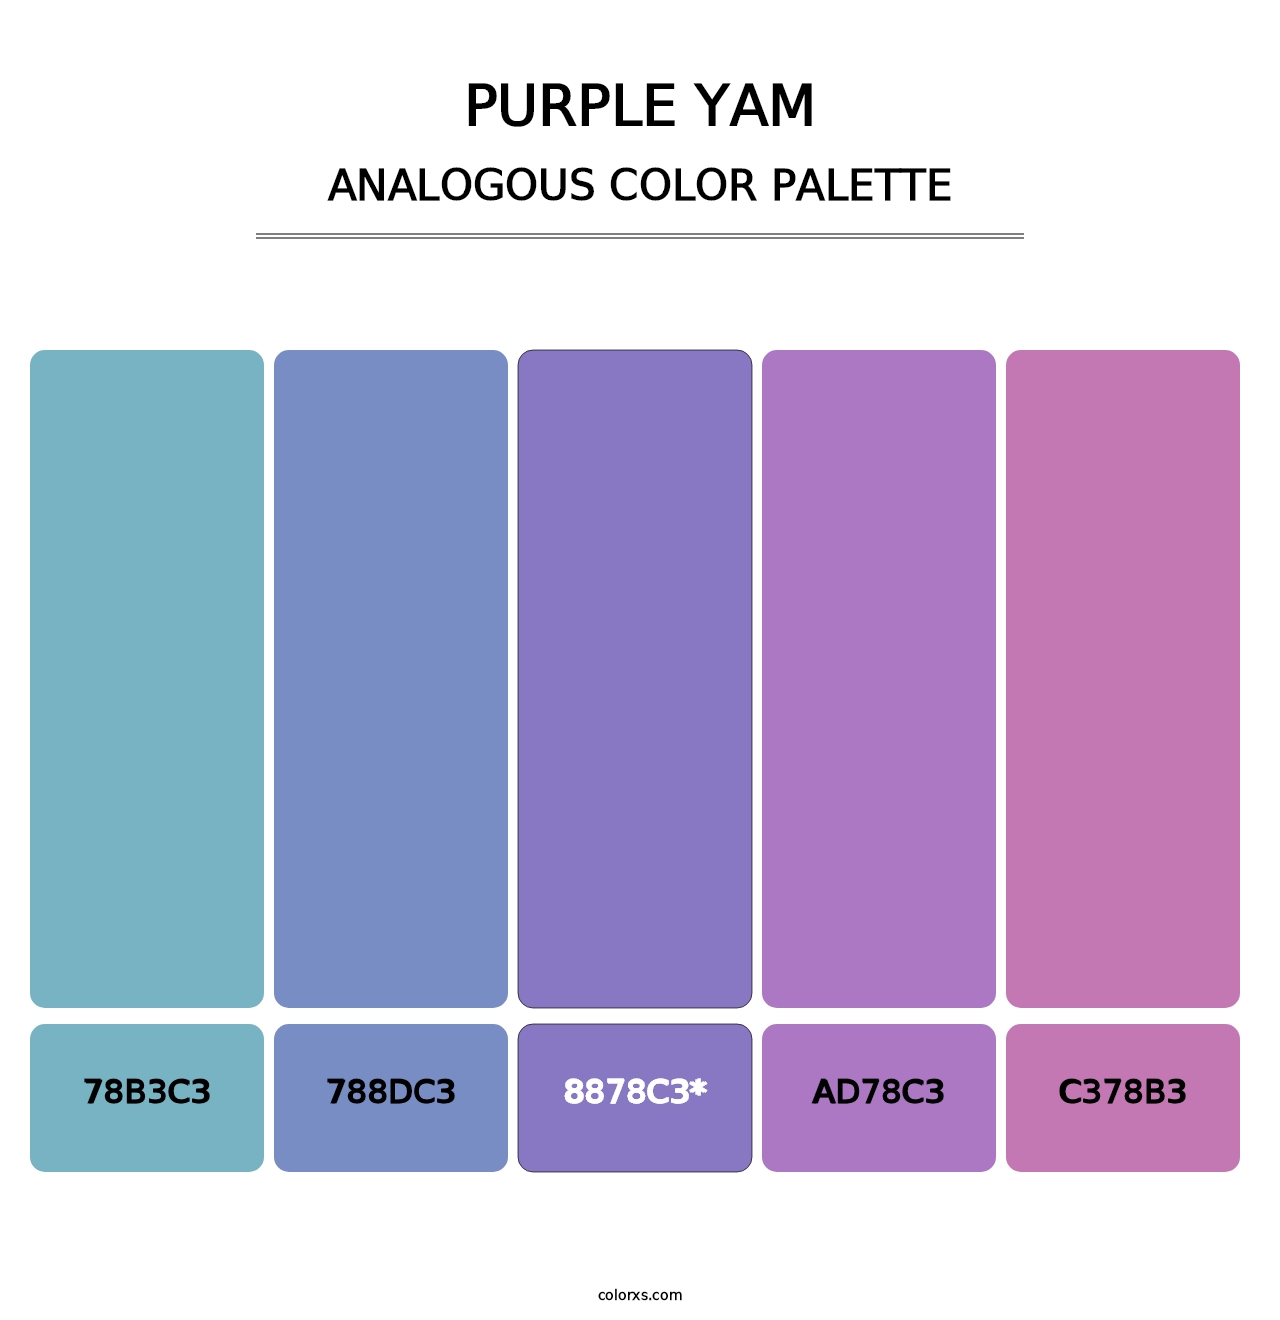 Purple Yam - Analogous Color Palette